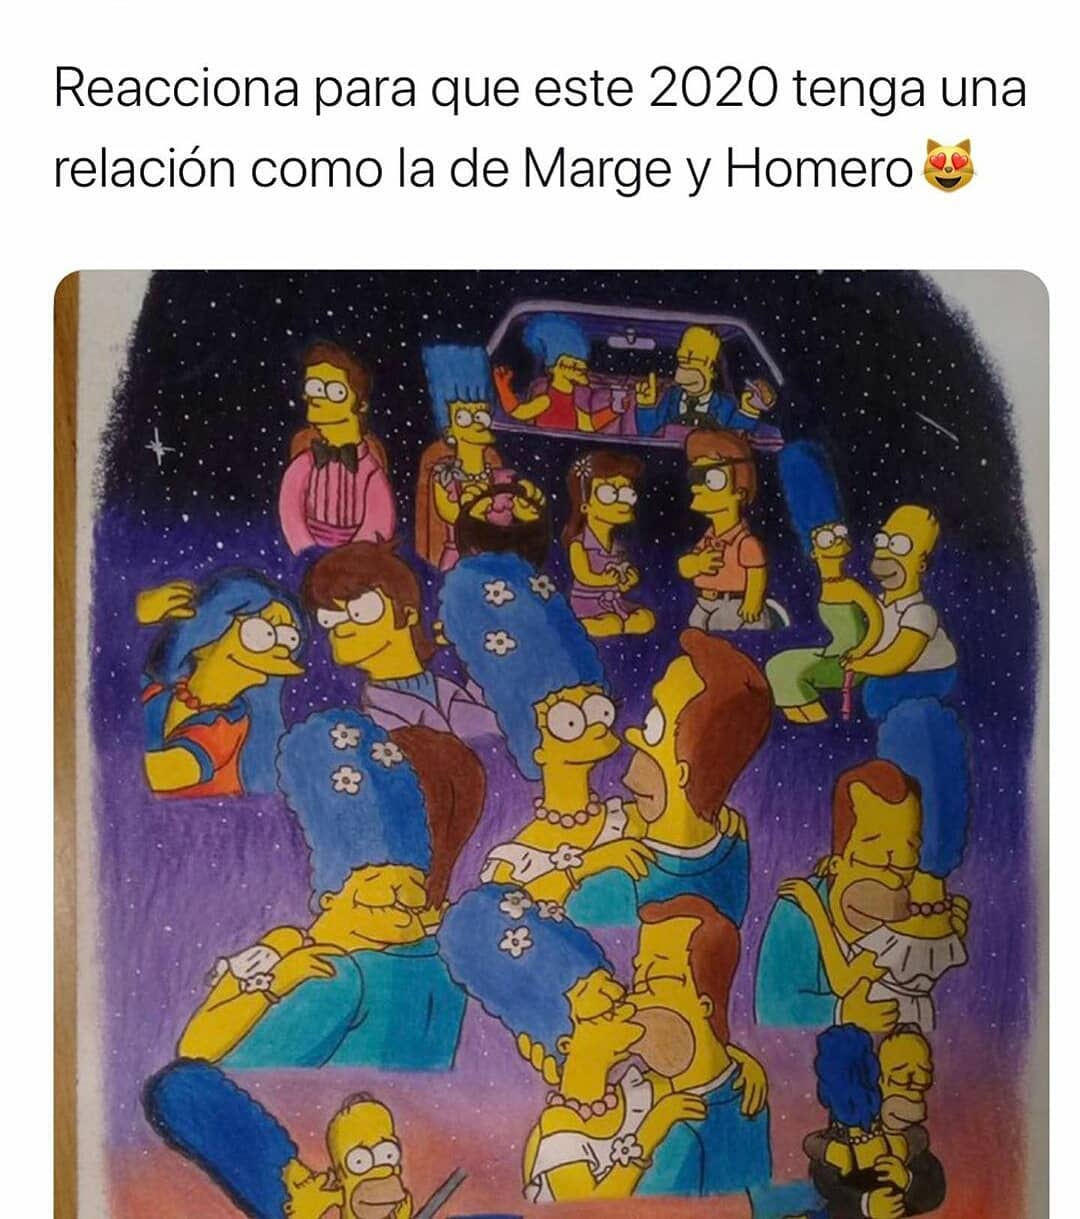 Reacciona para que este 2020 tenga una relación como la de Marge y Homero.